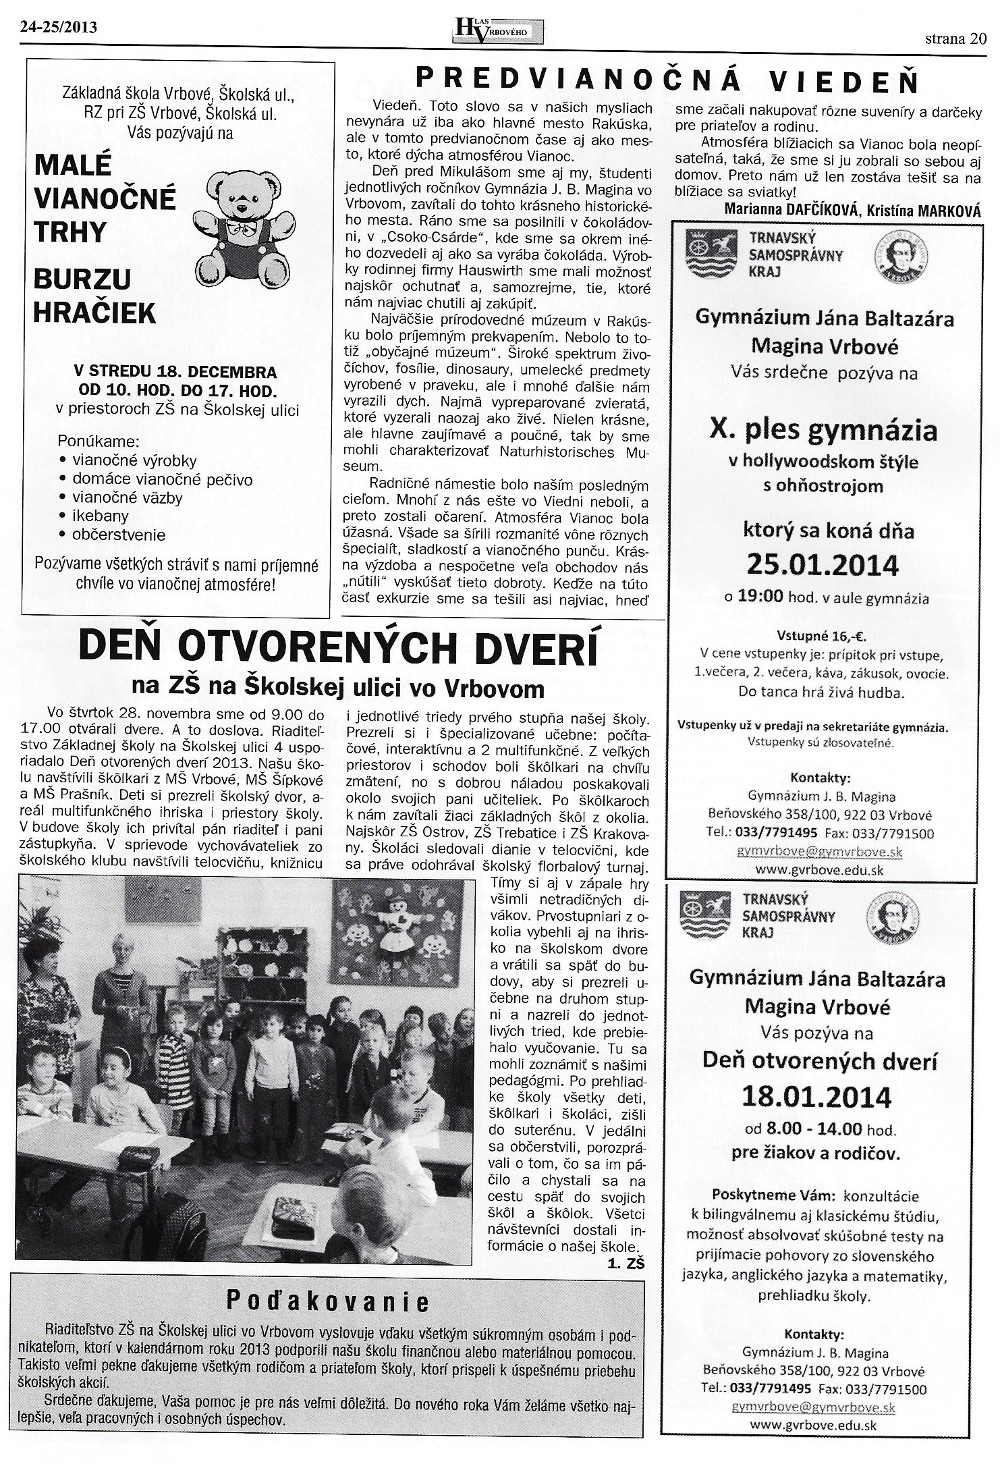 Hlas Vrbového 24/2013, strana 21